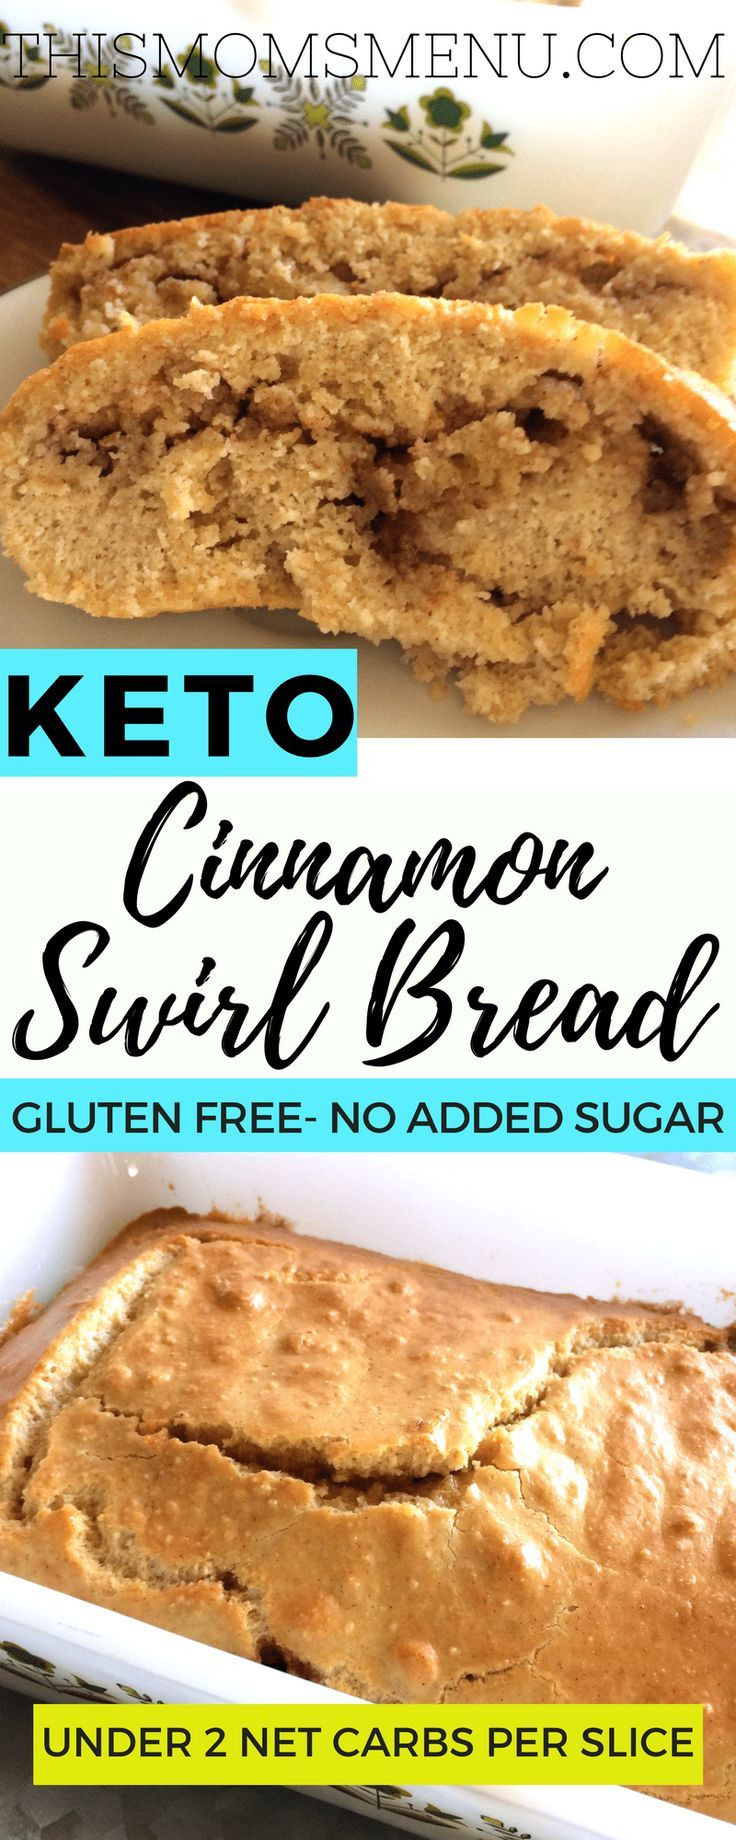 Carbless Bread Recipe
 This recipe for keto cinnamon swirl bread brings all the